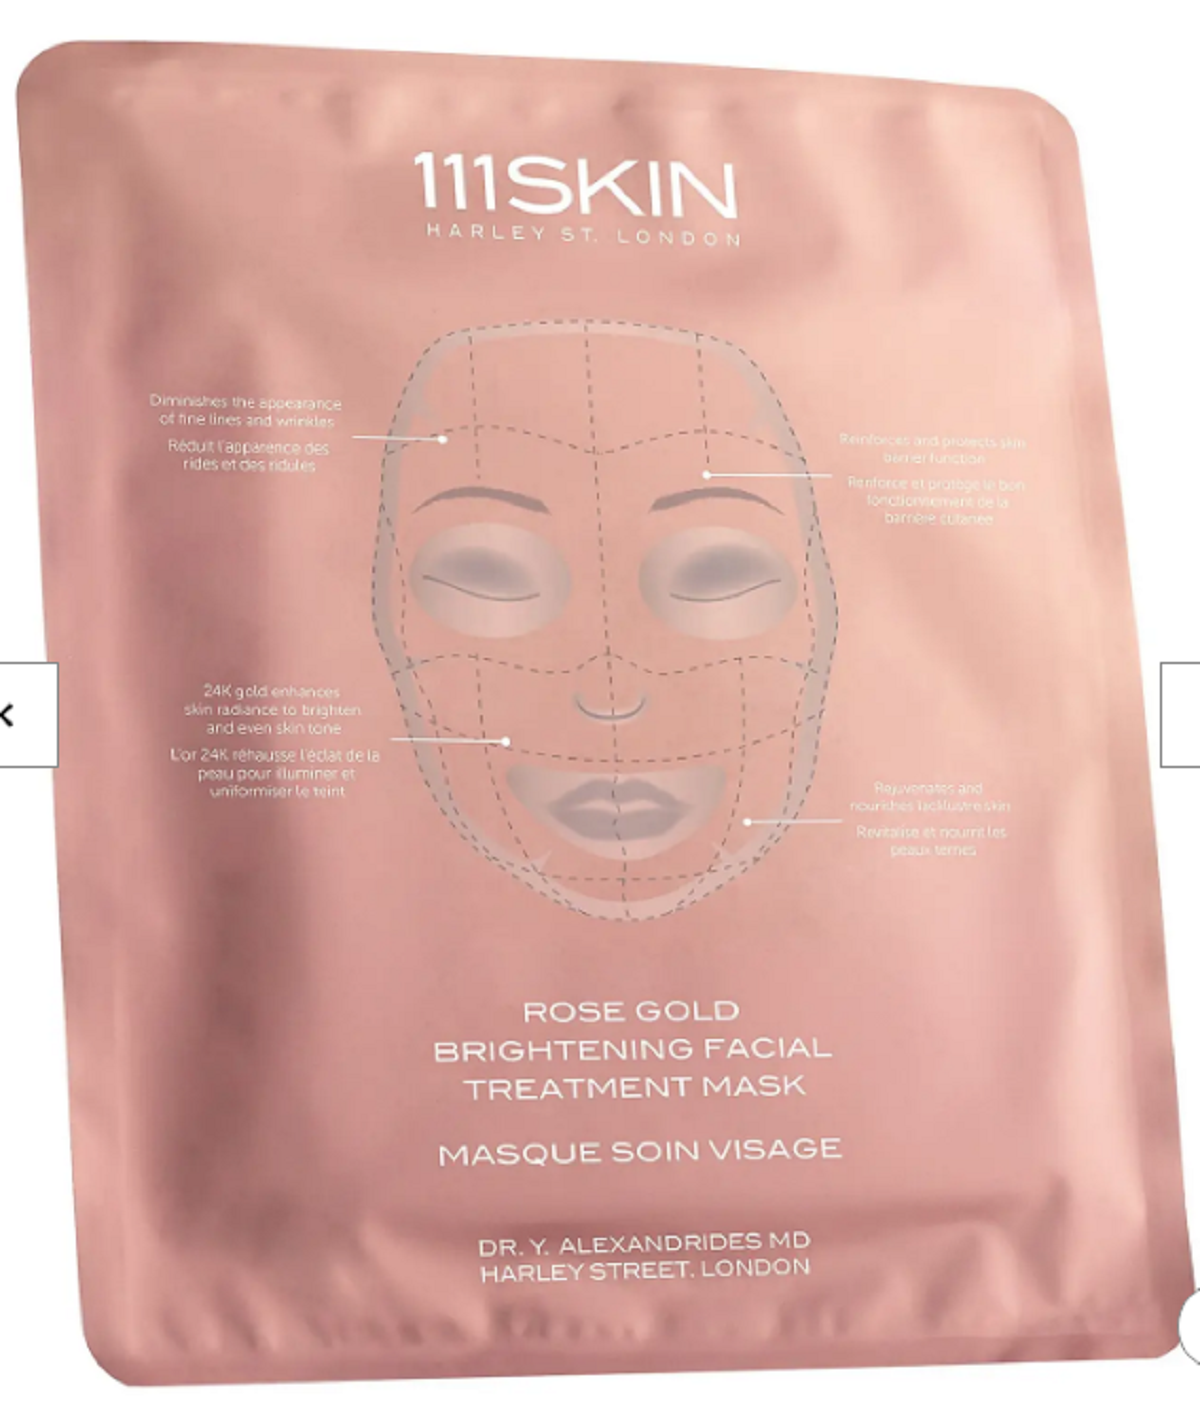  111Skin maska za lice sa ekstraktom ruže i 24-karatnim zlatom je jedna od maski koje šminkeri favorizuju. 